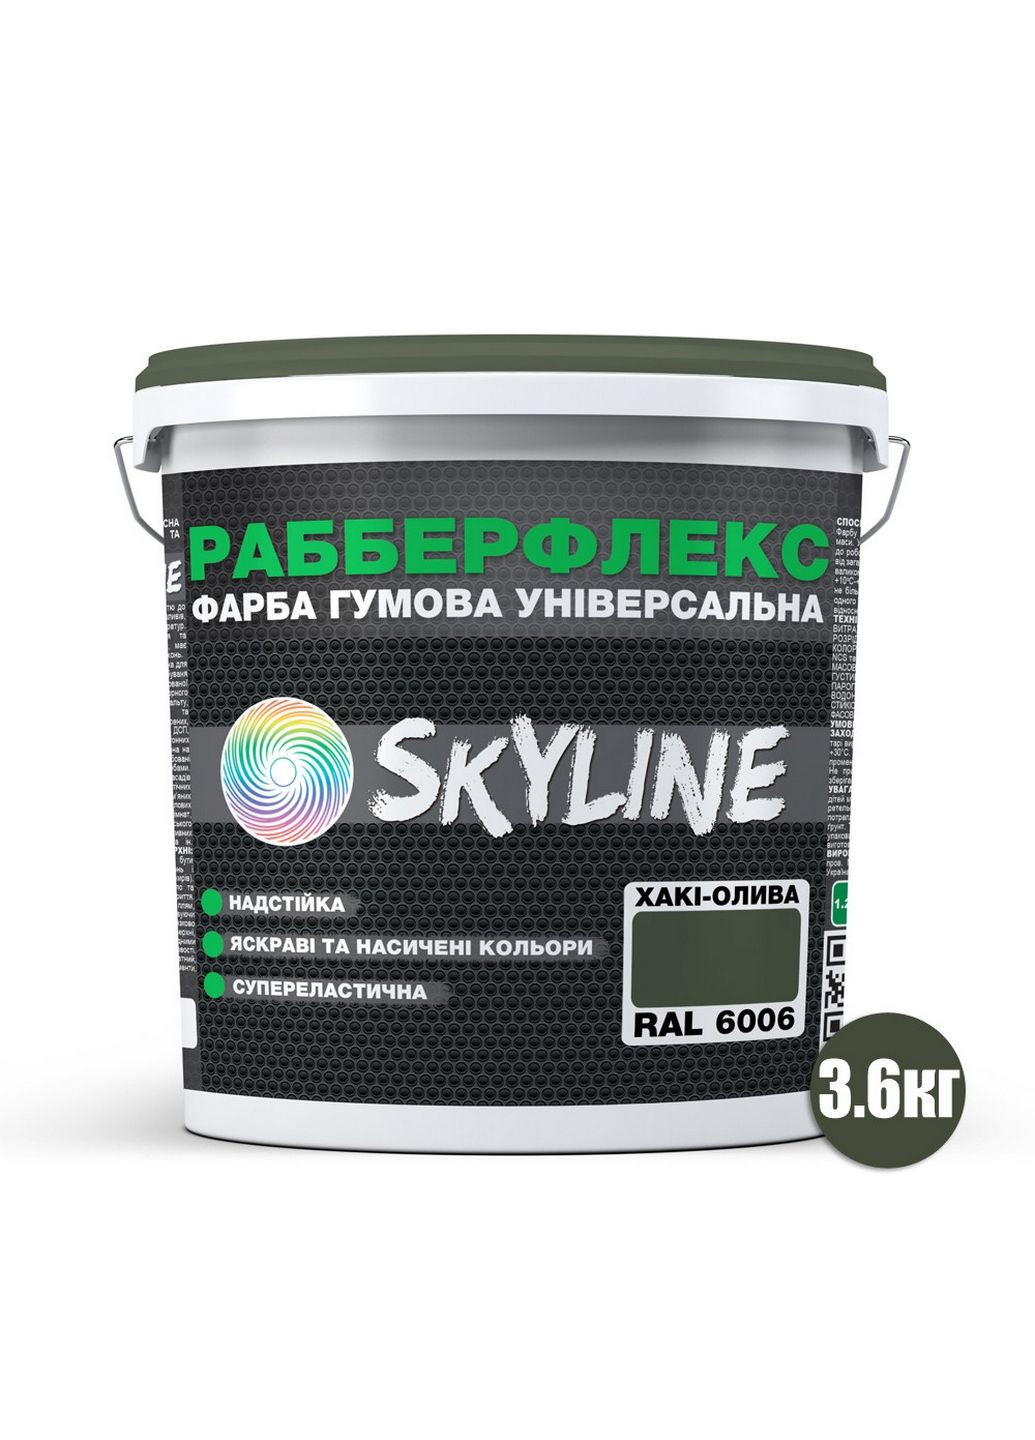 Надстійка фарба гумова супереластична «РабберФлекс» 3,6 кг SkyLine (289464320)